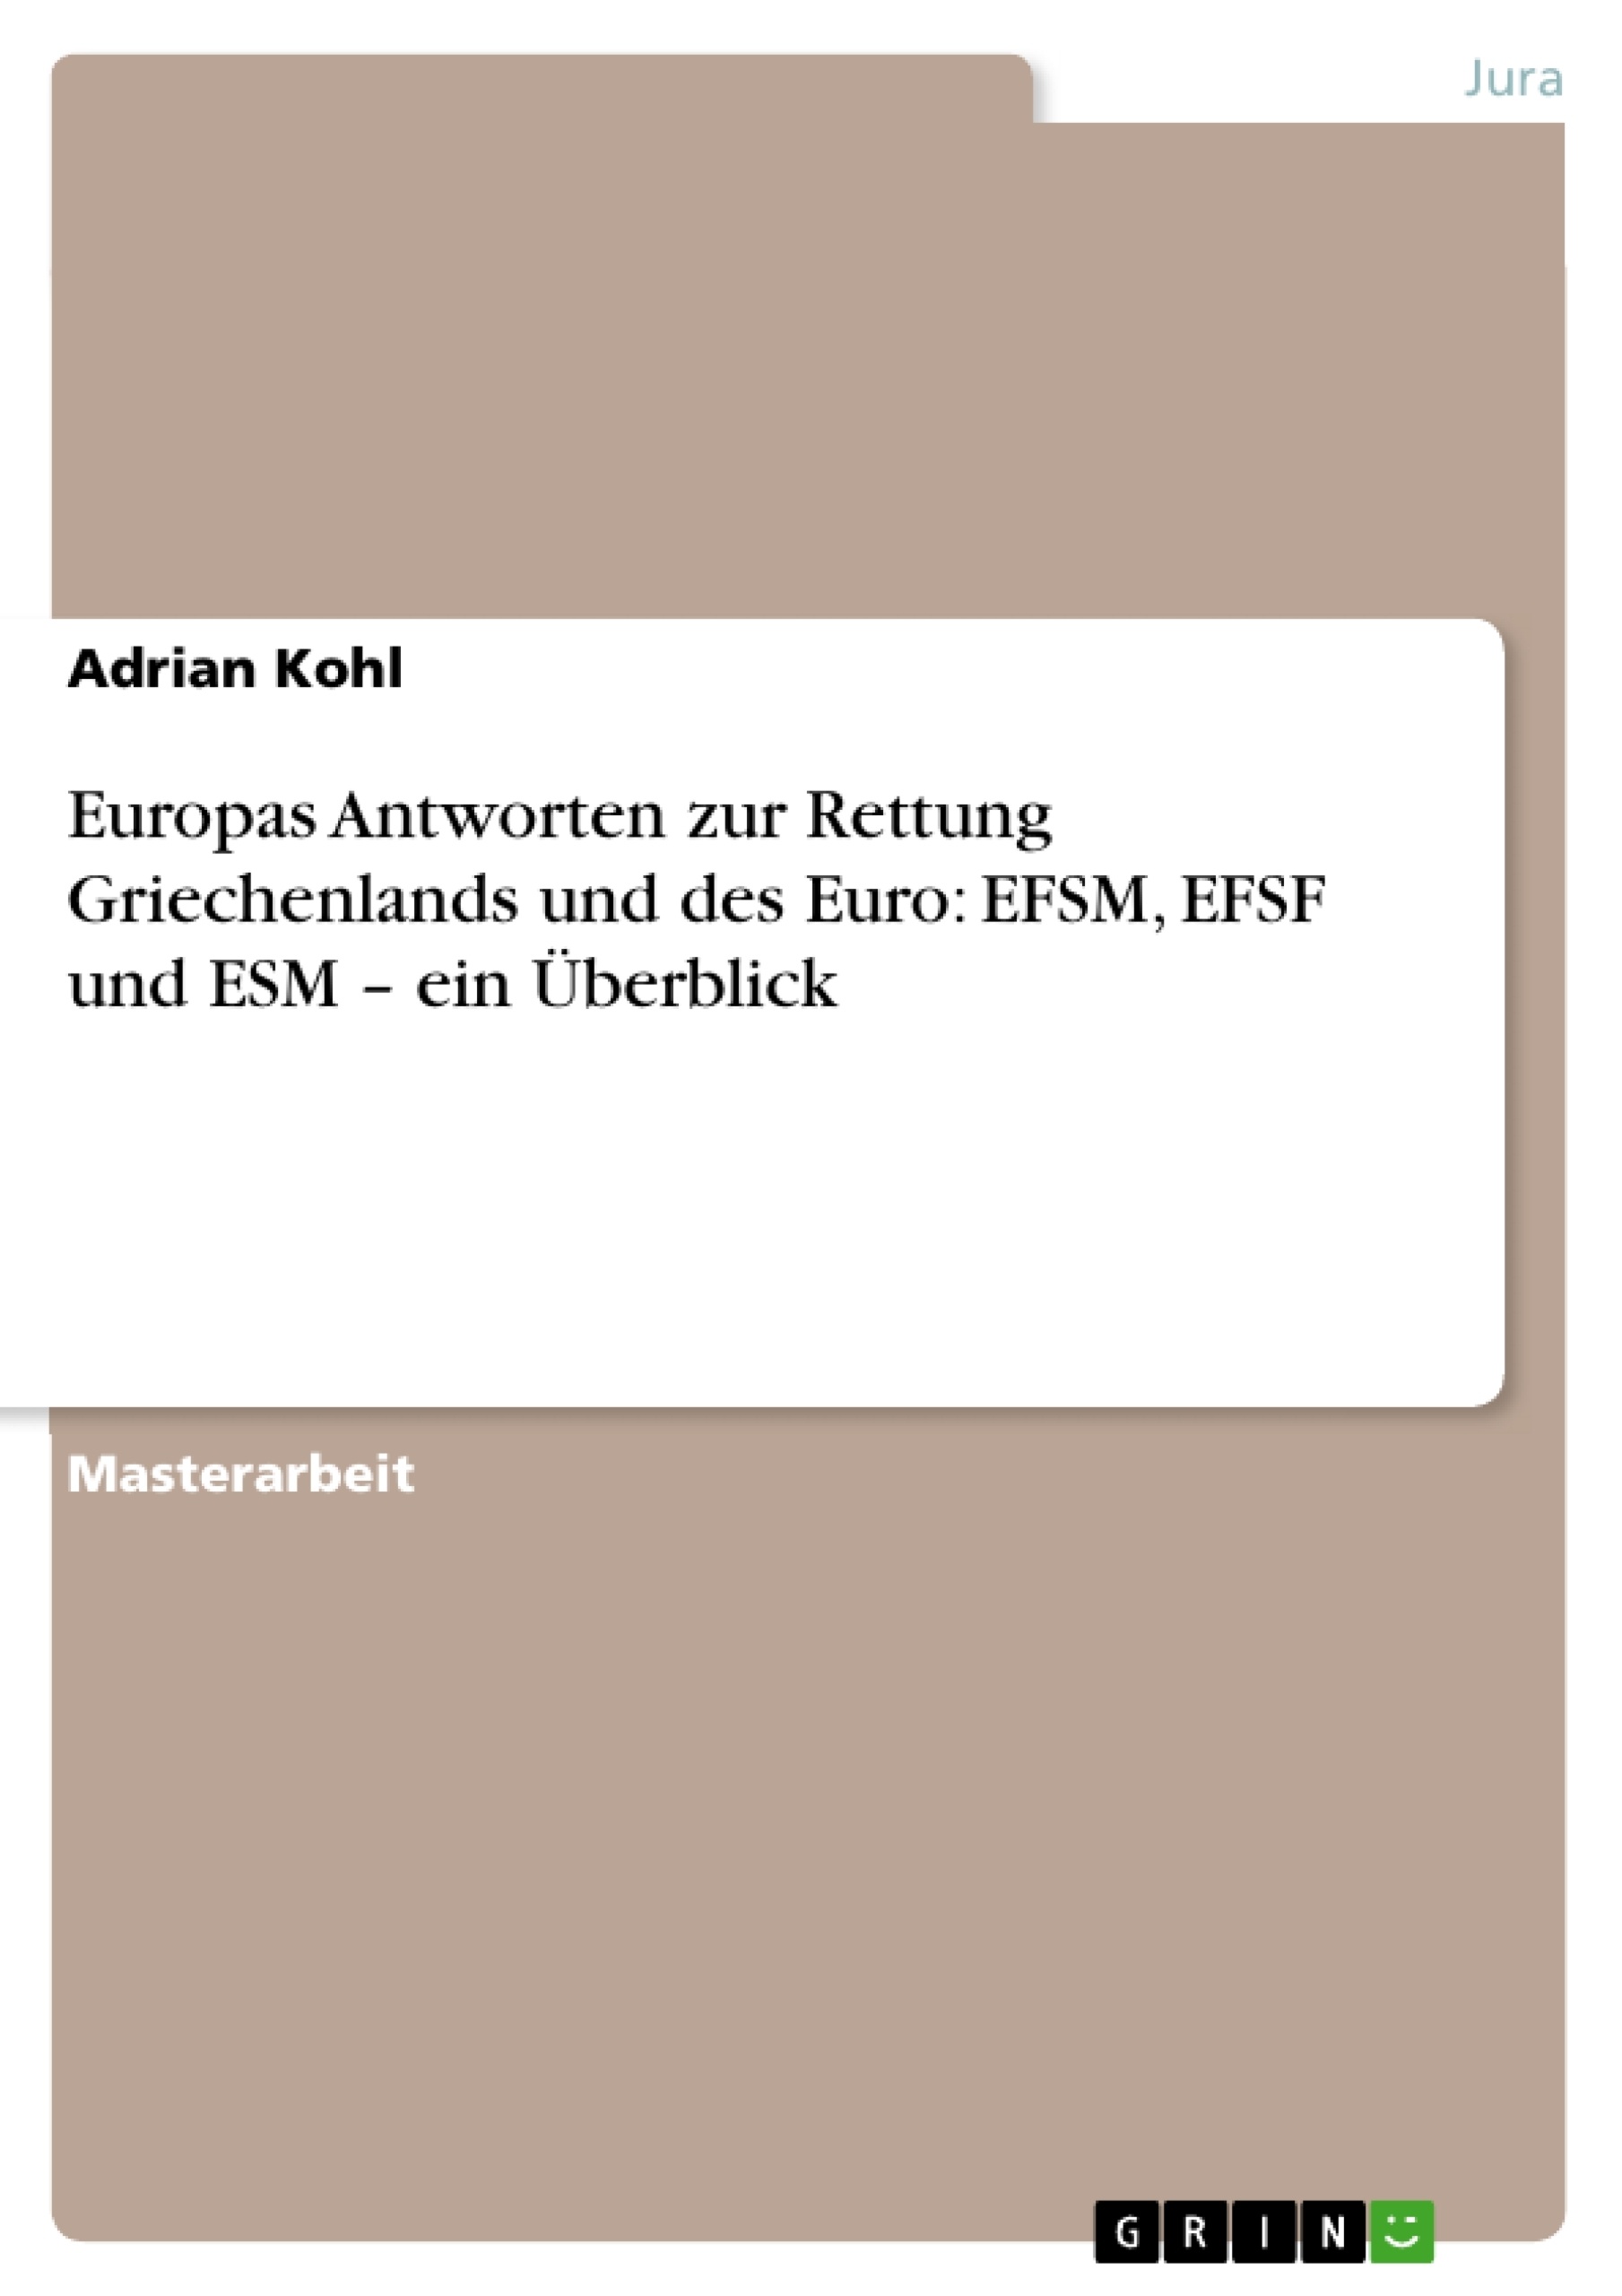 Title: Europas Antworten zur Rettung Griechenlands und des Euro: EFSM, EFSF und ESM – ein Überblick